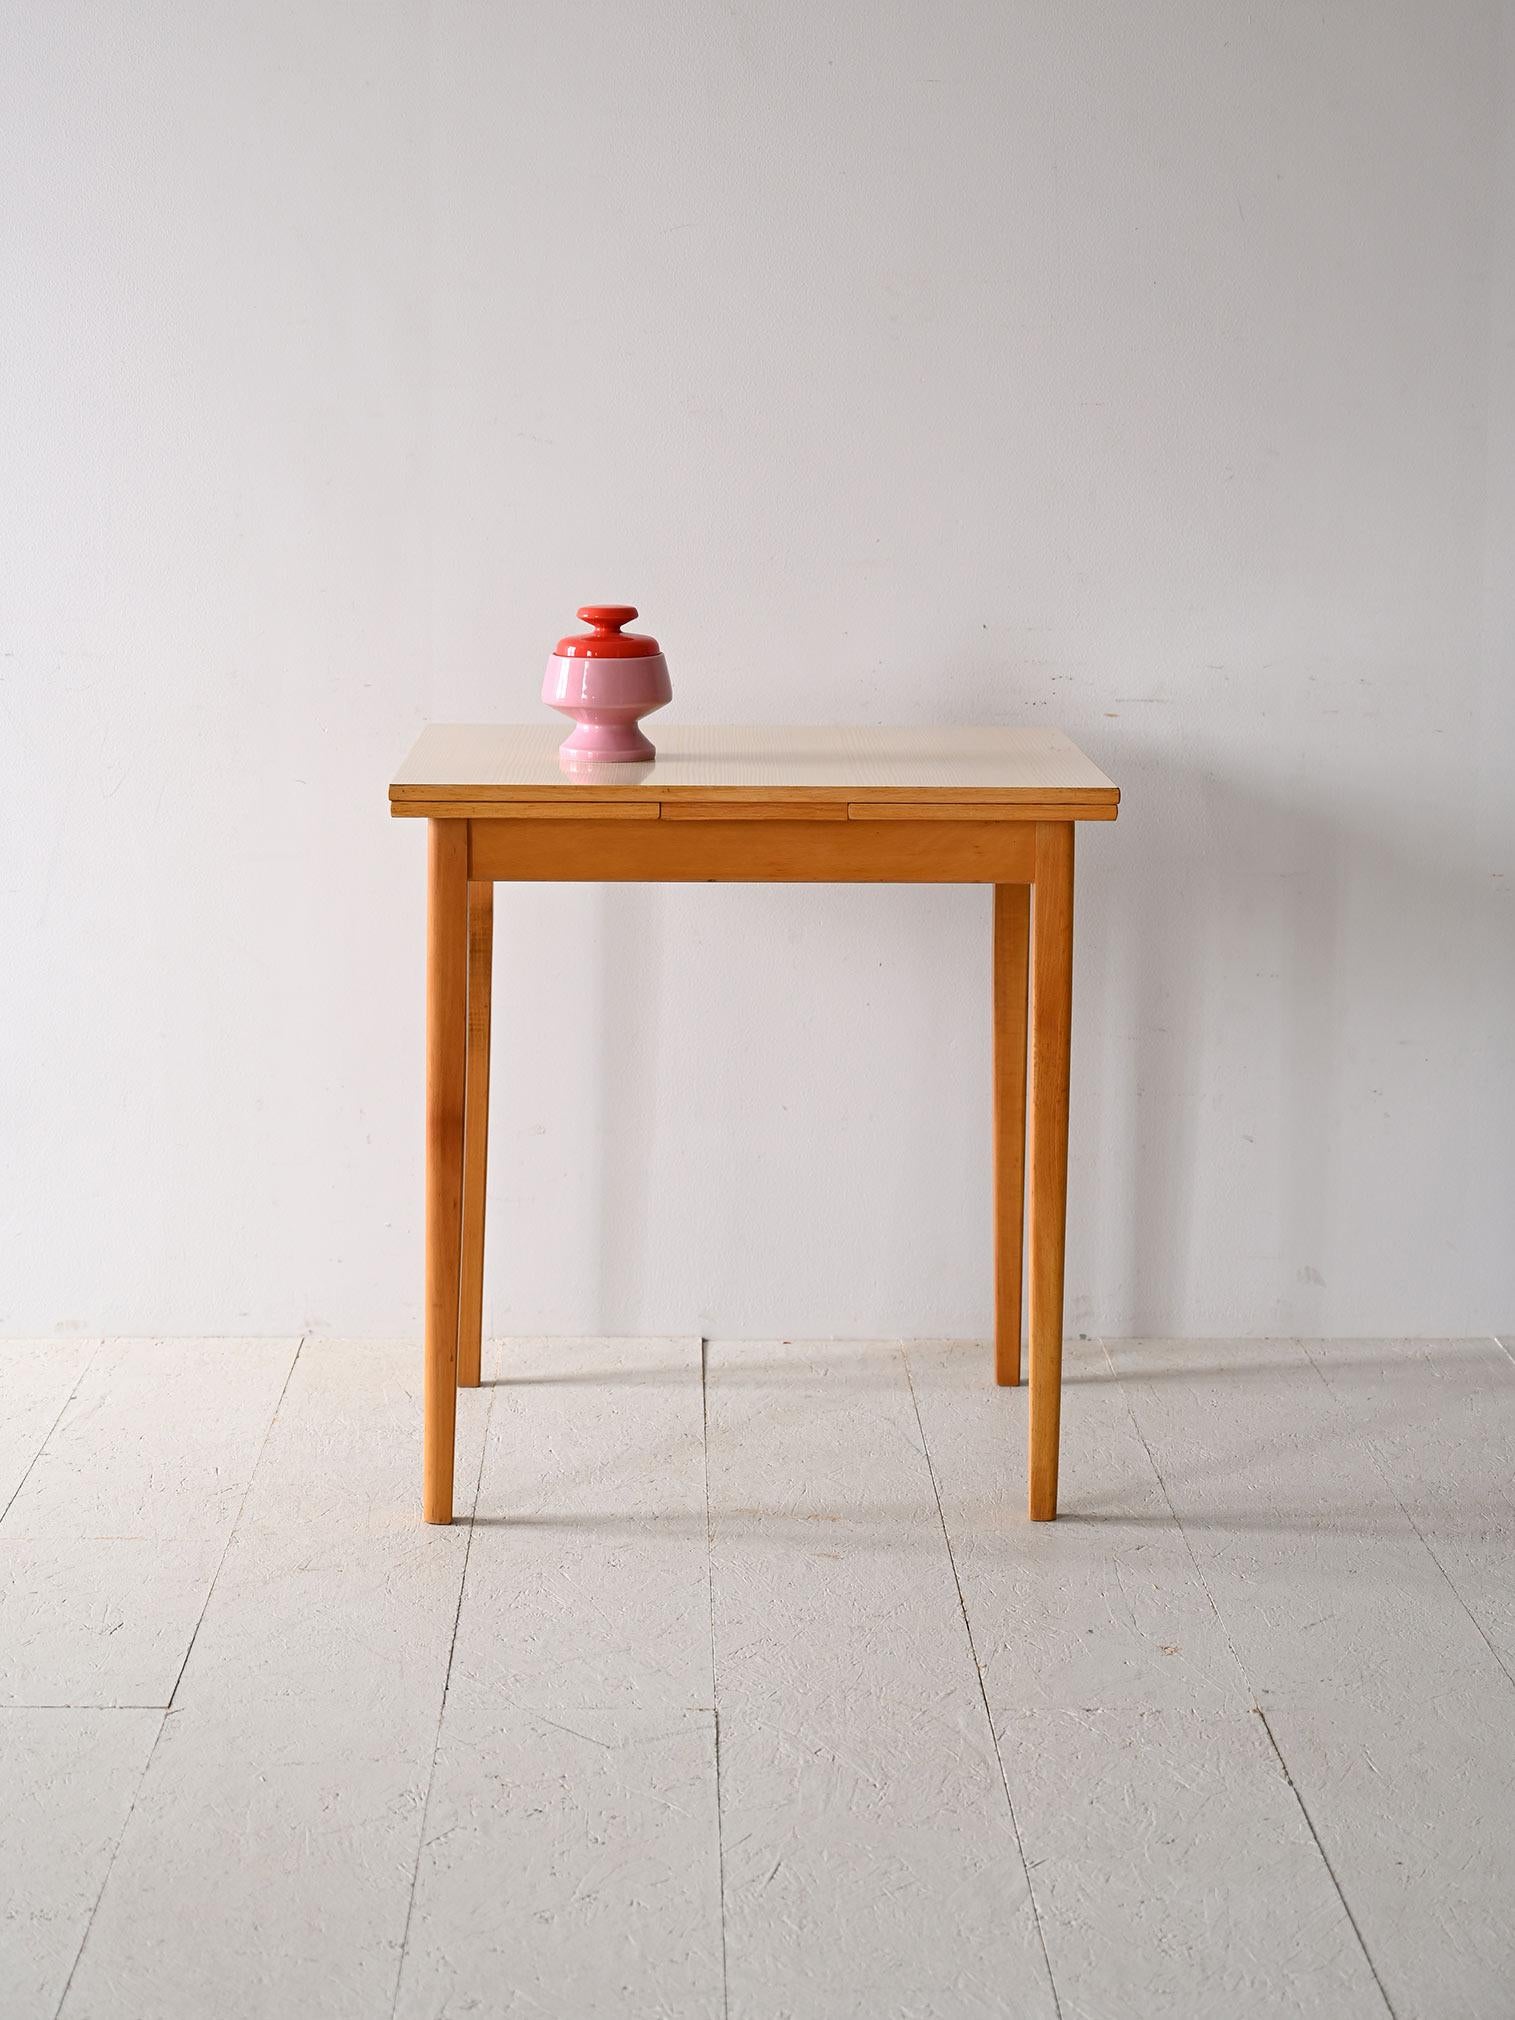 Originaler Esstisch aus den 1960er Jahren mit seitlichen Anbauten.

Dieses Vintage-Möbelstück nordischer Herkunft zeigt den typischen Geschmack und die Funktionalität des skandinavischen Designs. Die tragende Struktur ist aus leichtem Birkenholz